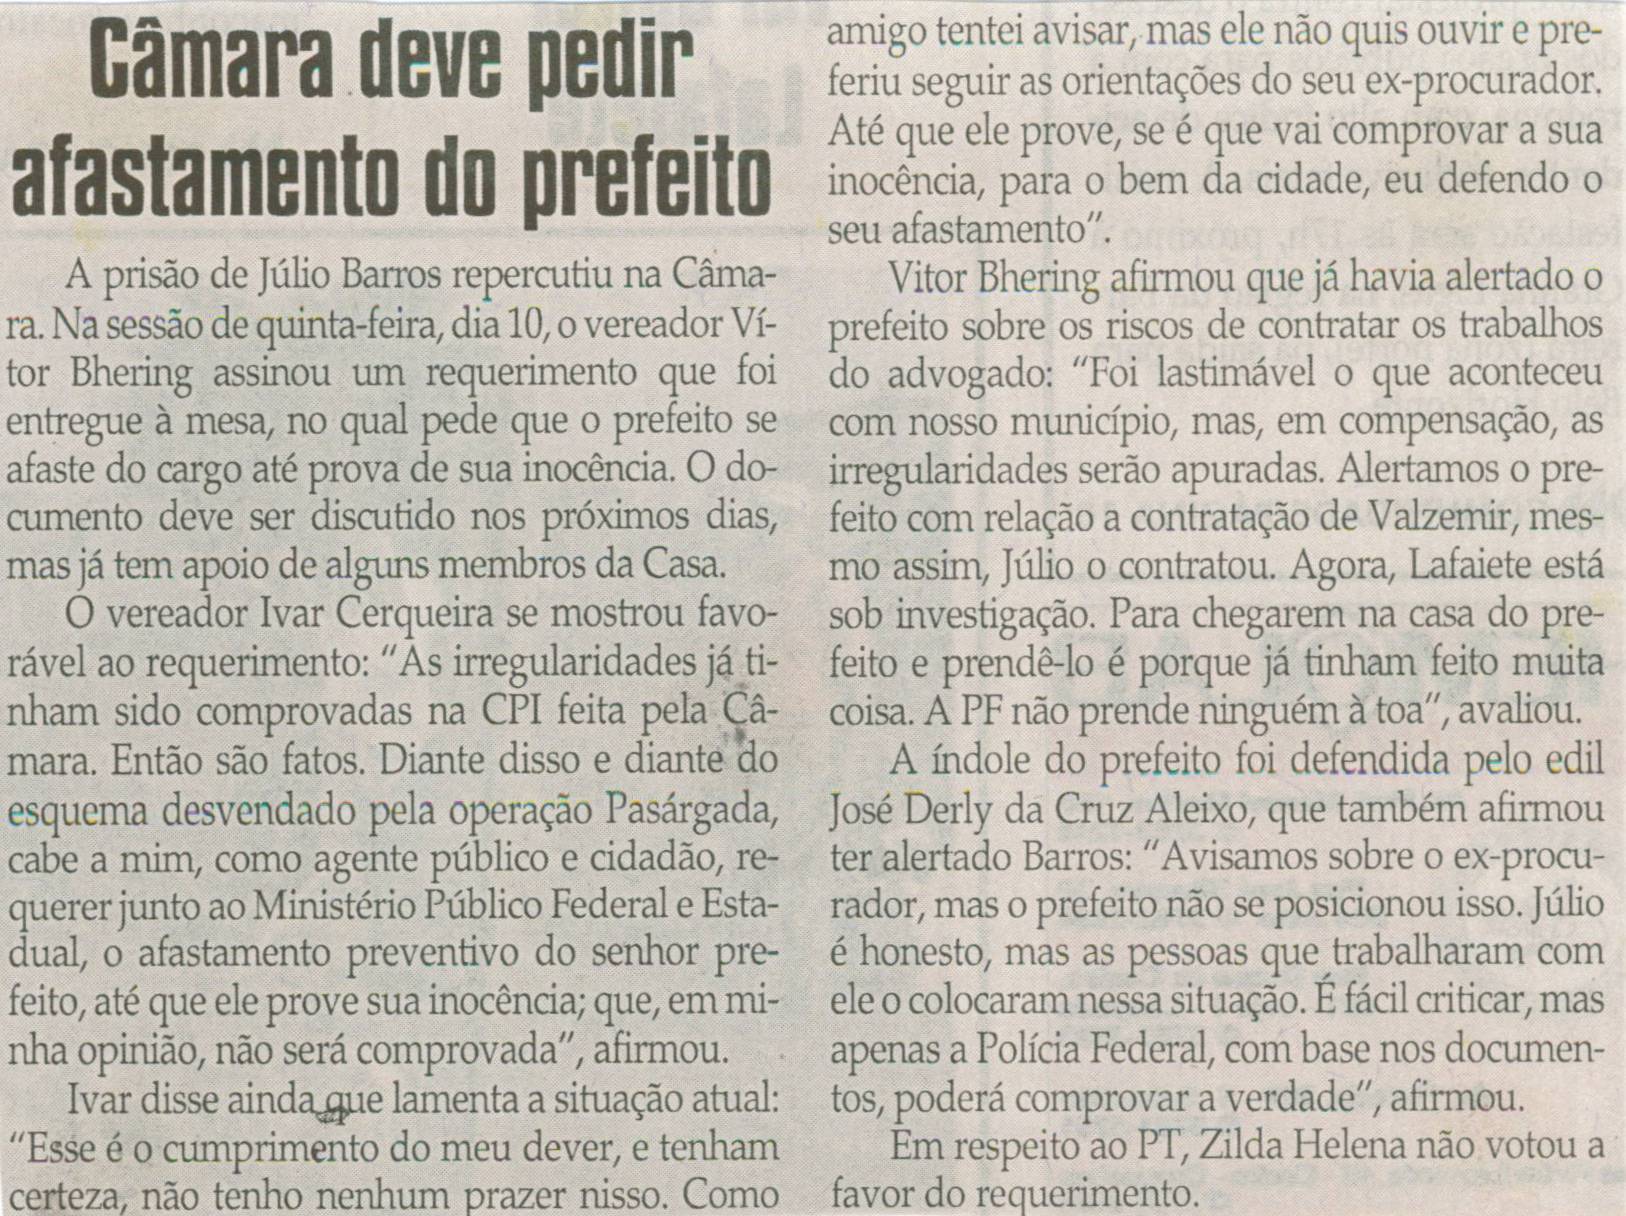 Câmara deve pedir afastamento do prefeito. Jornal Correio da Cidade, Conselheiro Lafaiete, 12 abr. 2008, p. 02.